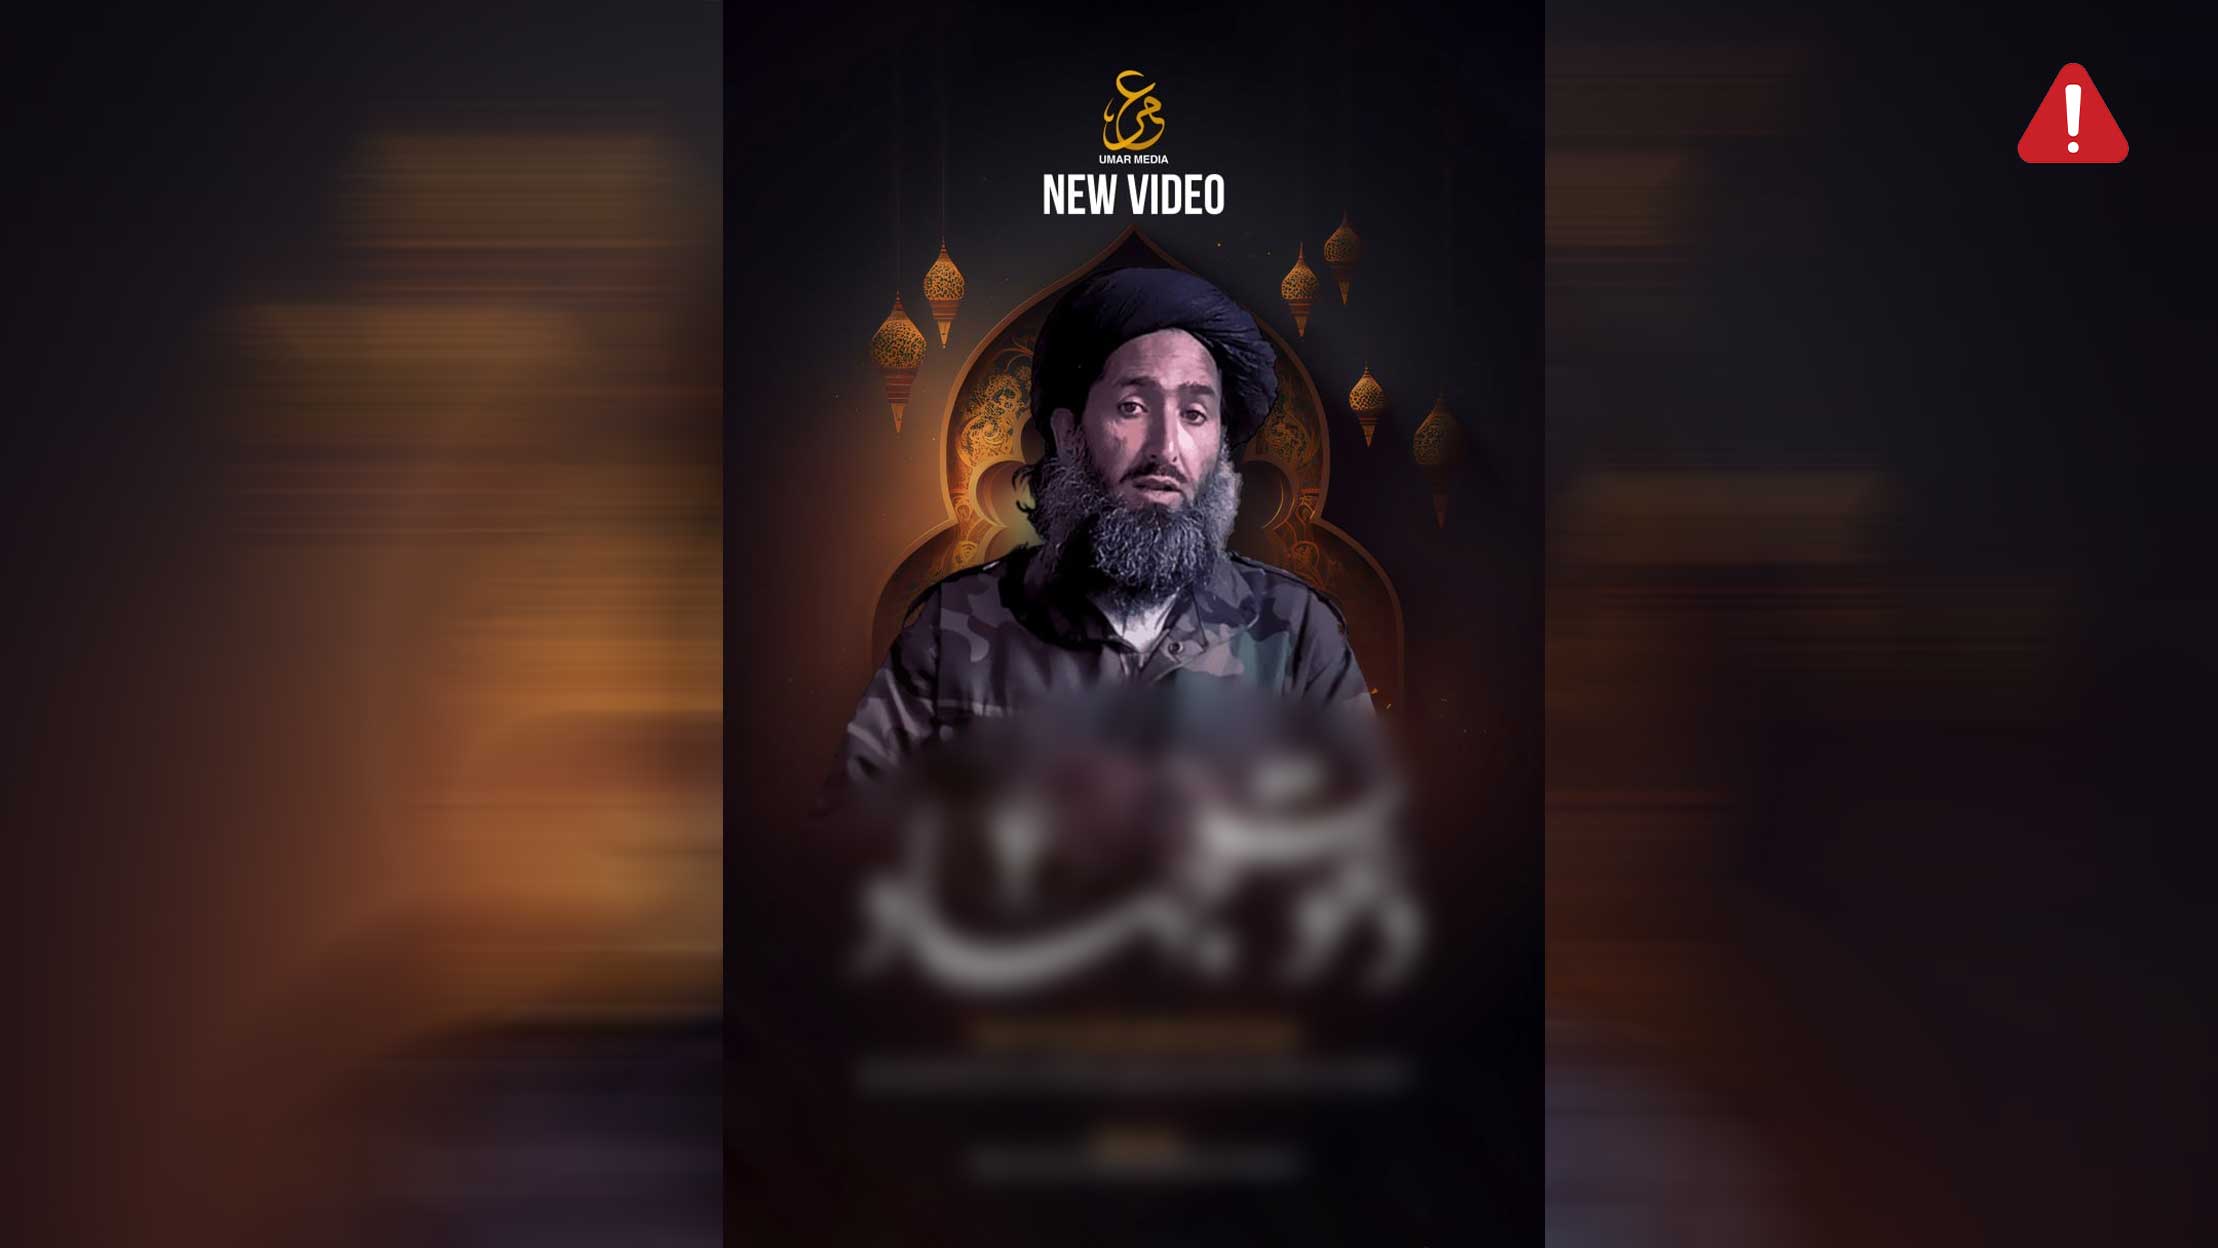 TKD MONITORING: New Video from TTP (Dawat-e-Jihad), Episode 4